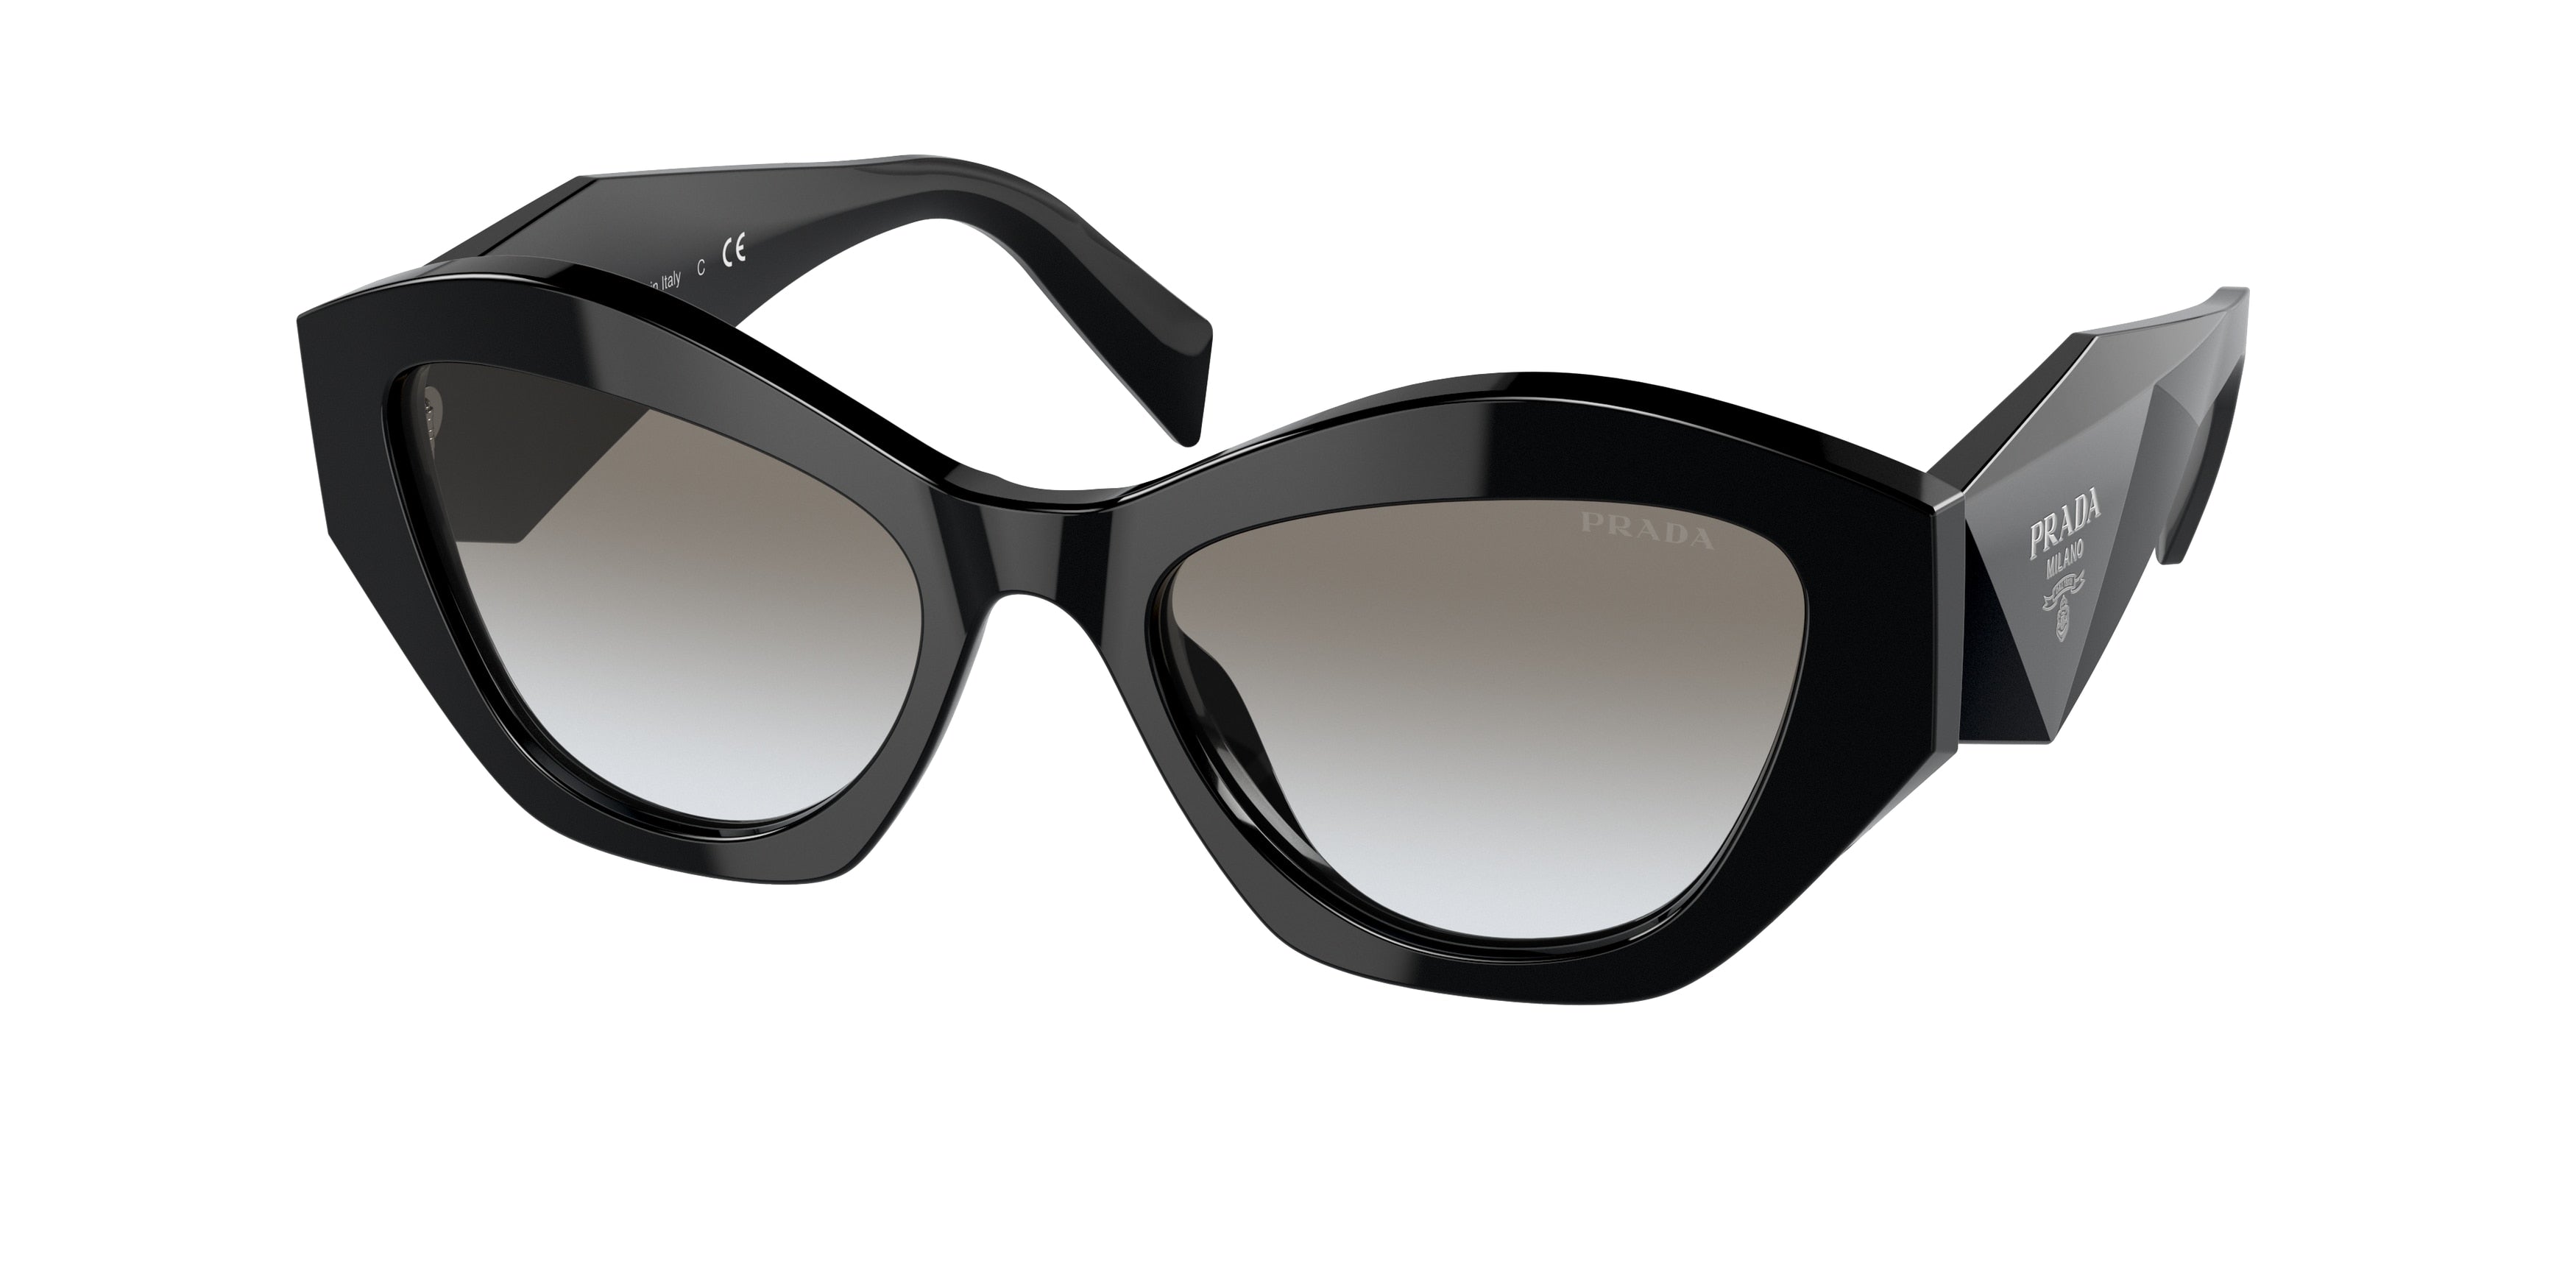 Prada PR07YS Irregular Sunglasses  1AB0A7-Black 52-145-19 - Color Map Black